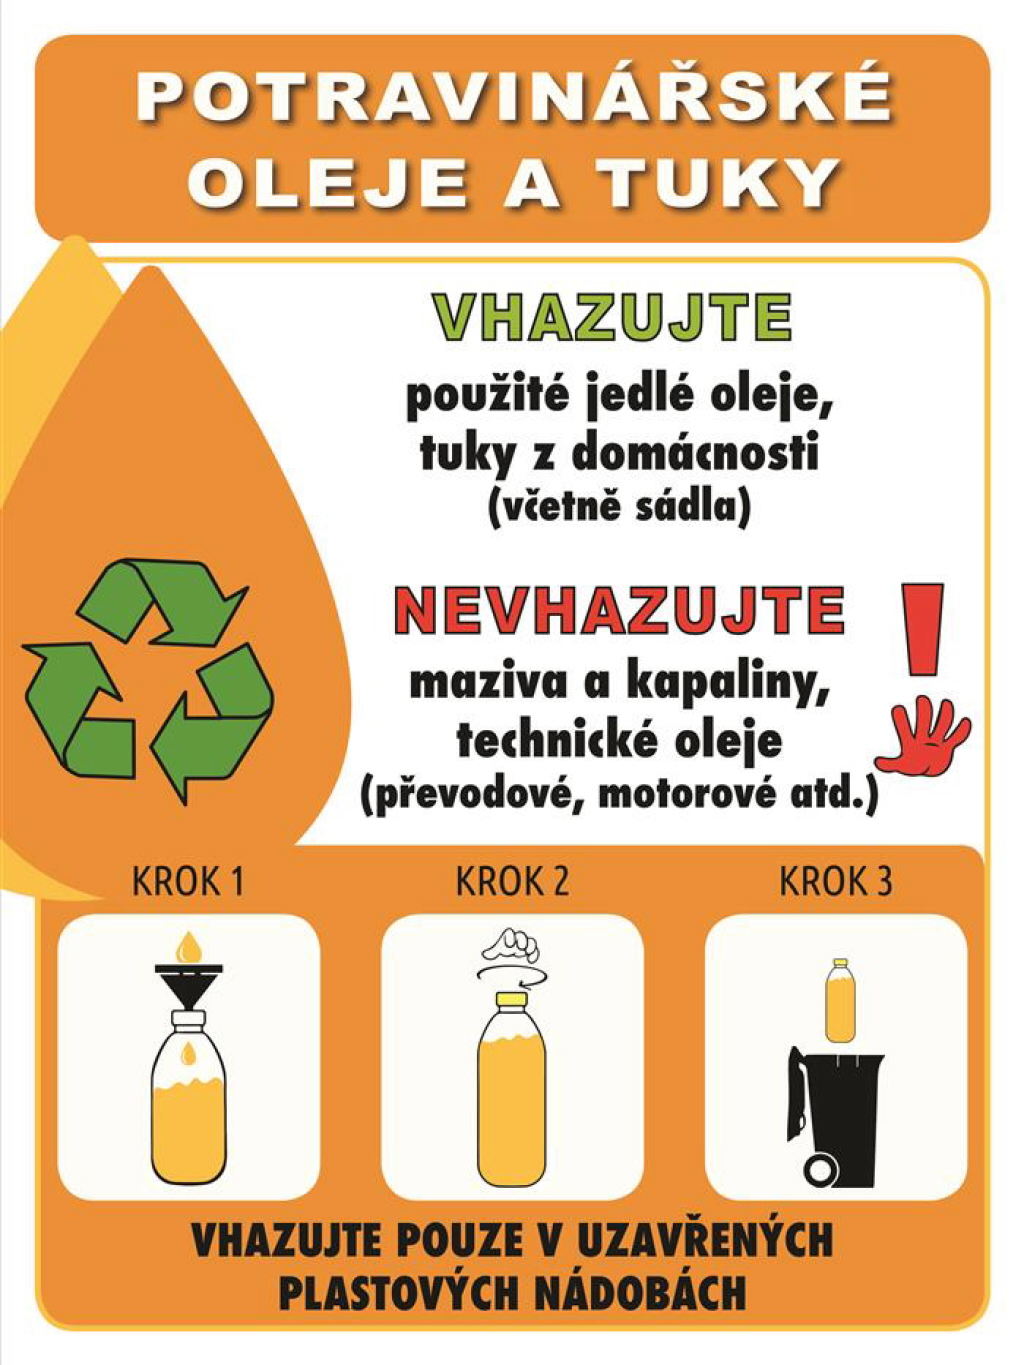 Jak správně třídit upotřebený jedlý olej a tuk, když se stane odpadem?